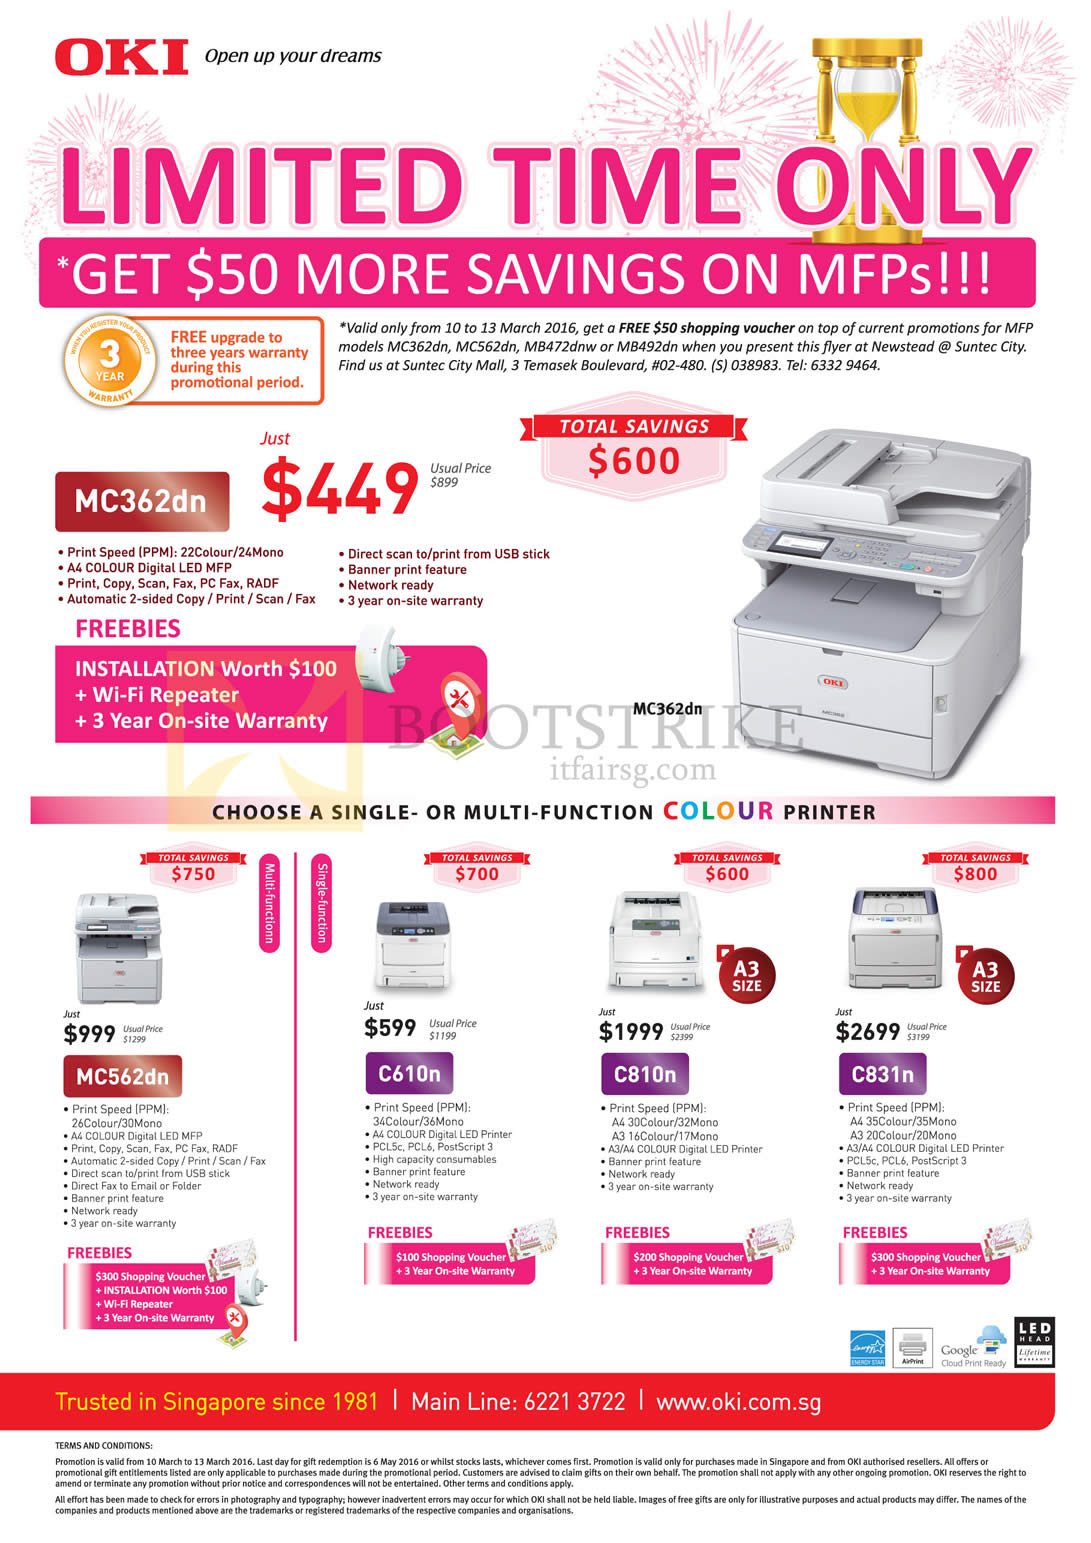 IT SHOW 2016 price list image brochure of OKI Printers MC362dn, MC562dn, C610n, C810n, C831n